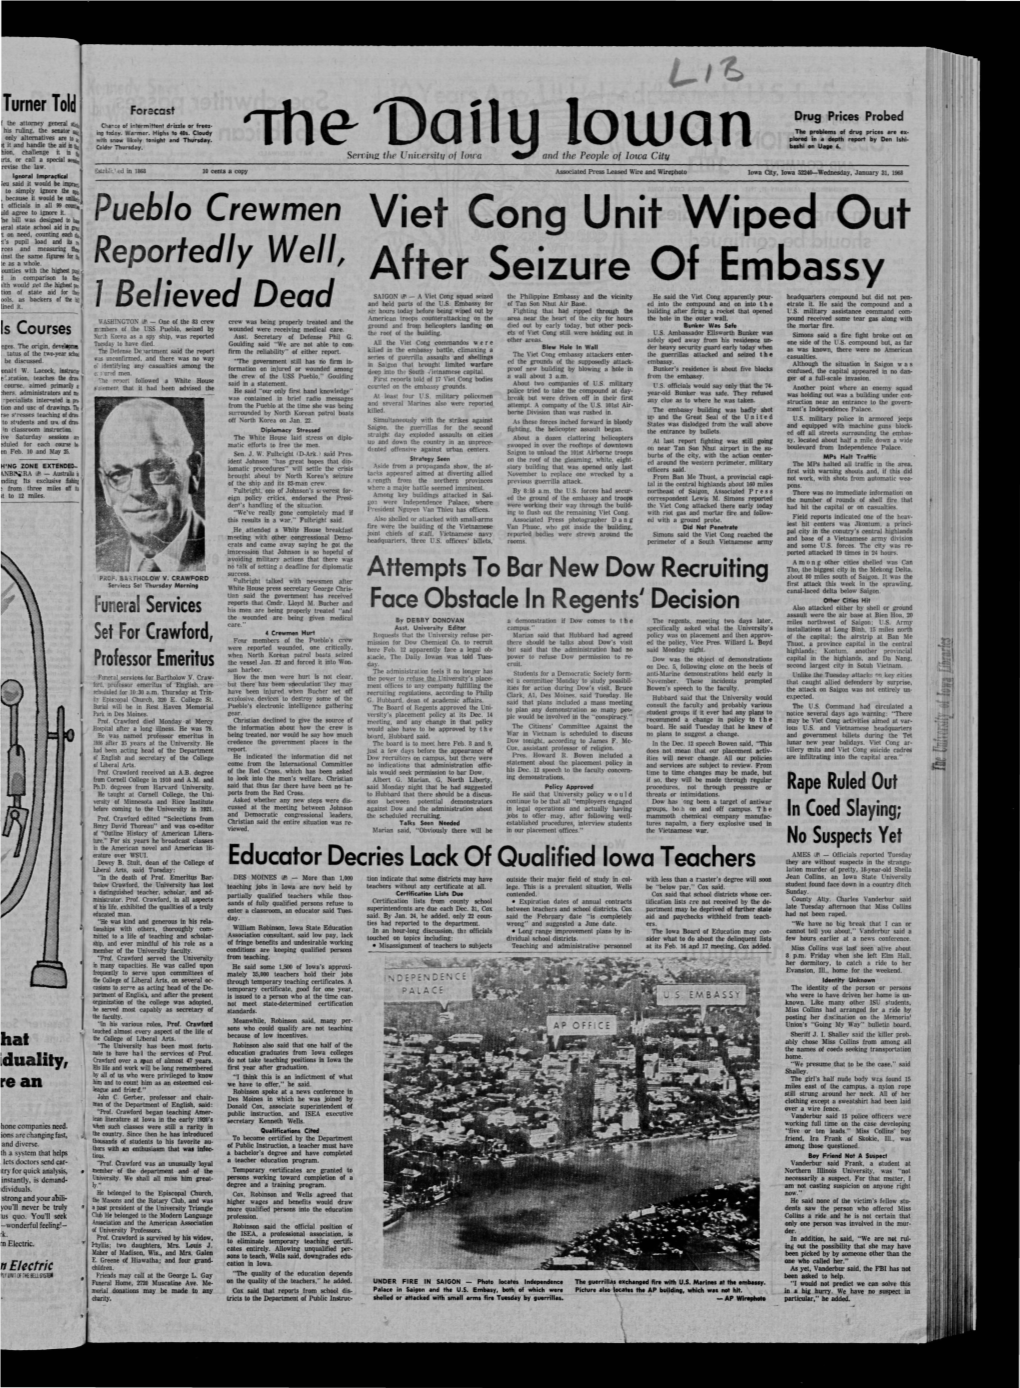 Daily Iowan (Iowa City, Iowa), 1968-01-31